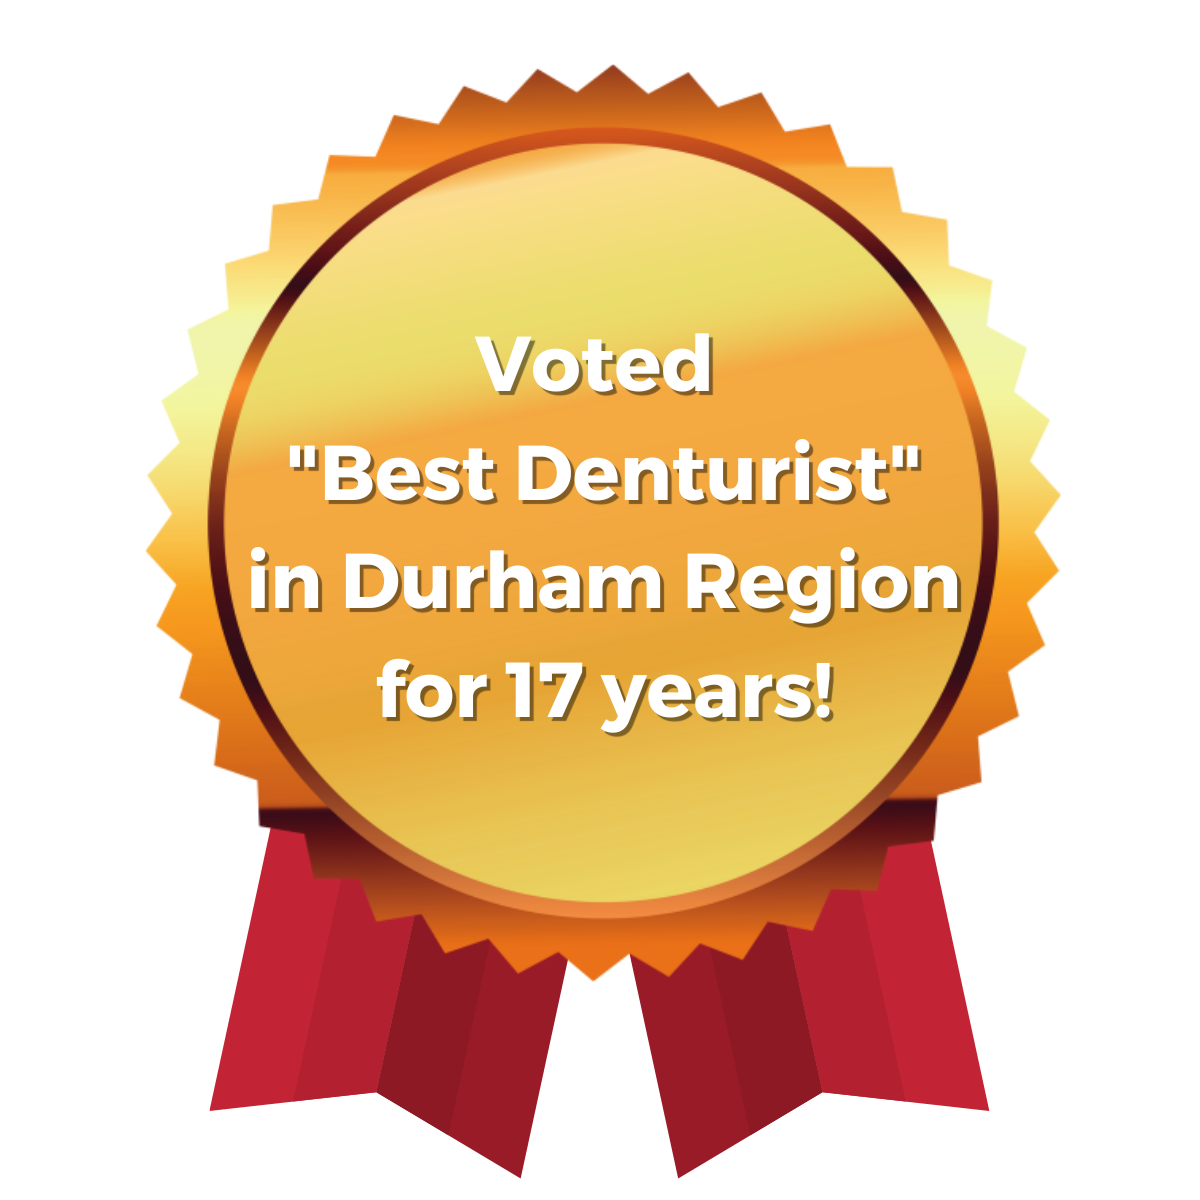 Best Denturist in Durham Region